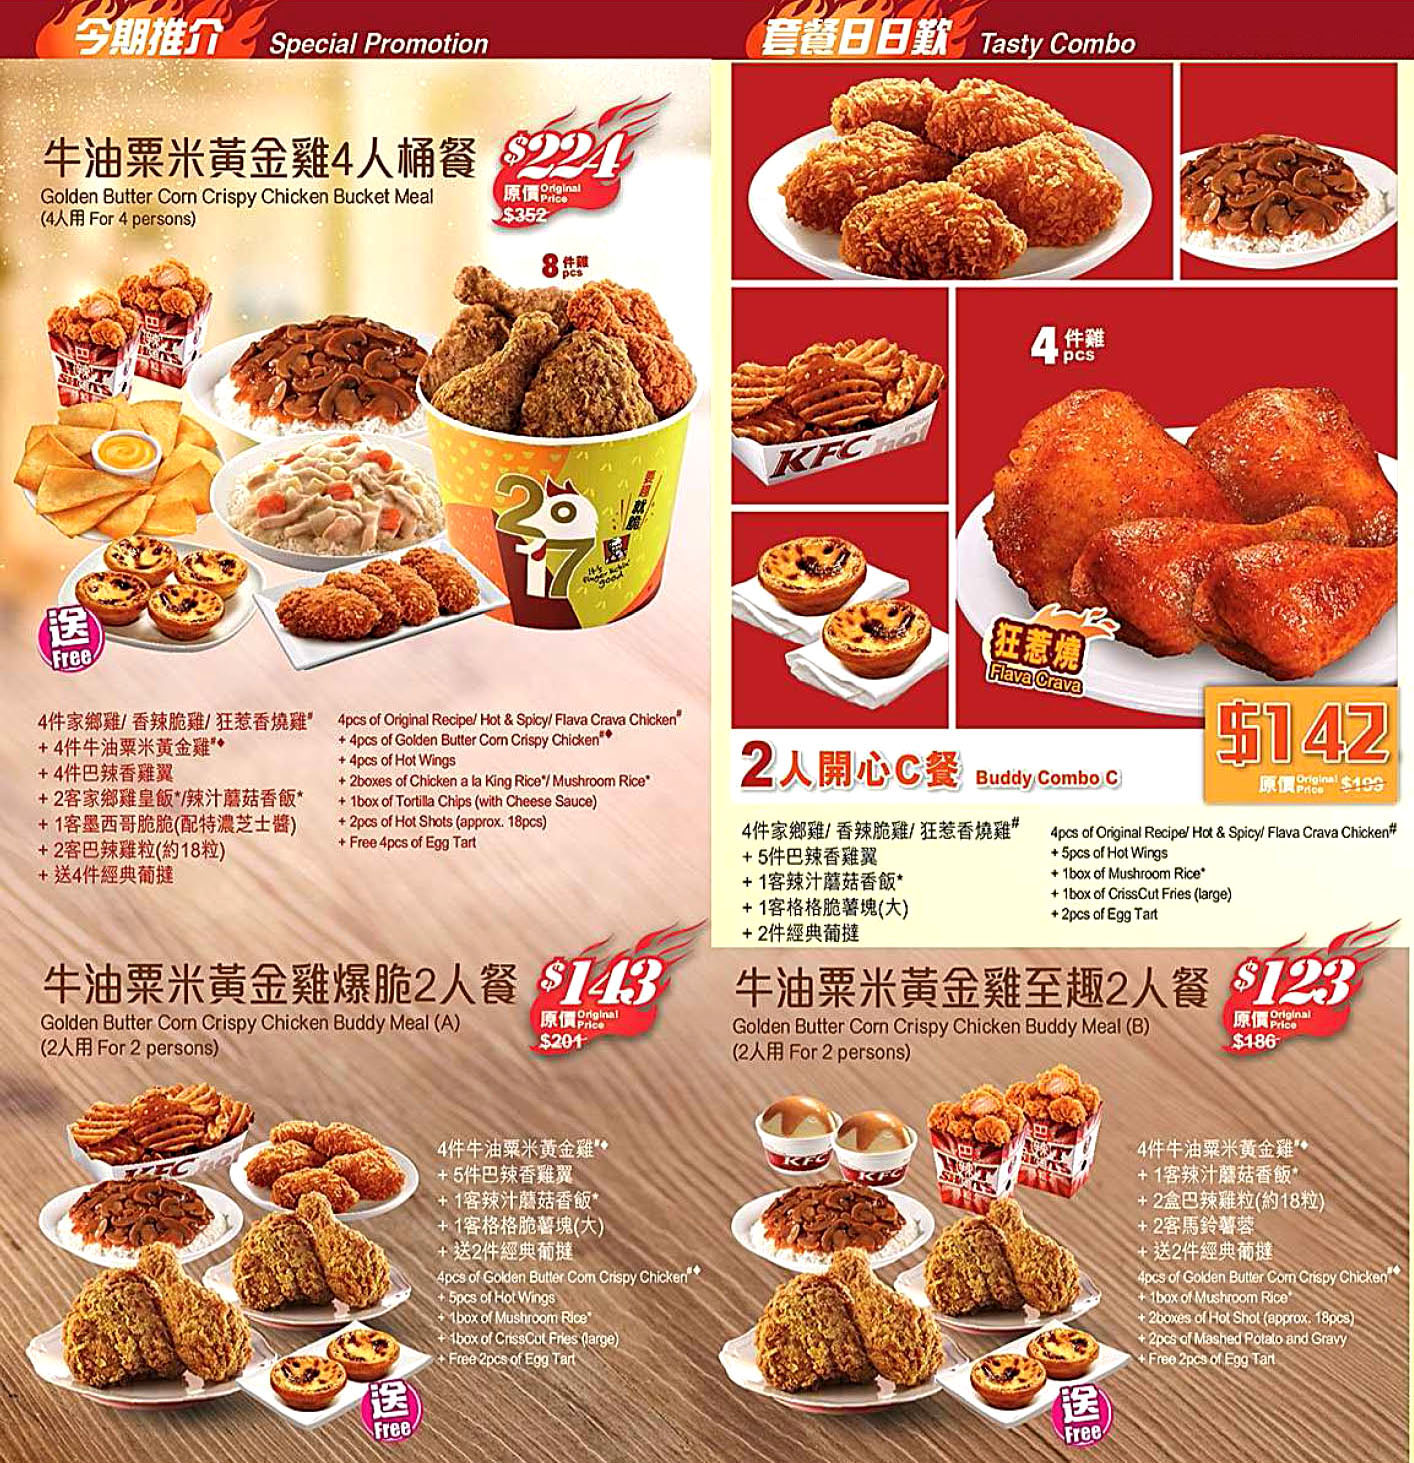 香港肯德基KFC家鄉雞餐廳KFC kong kong delivery service 外賣速遞服務美食餐飲劵餐單餐牌價格優惠價錢價目表